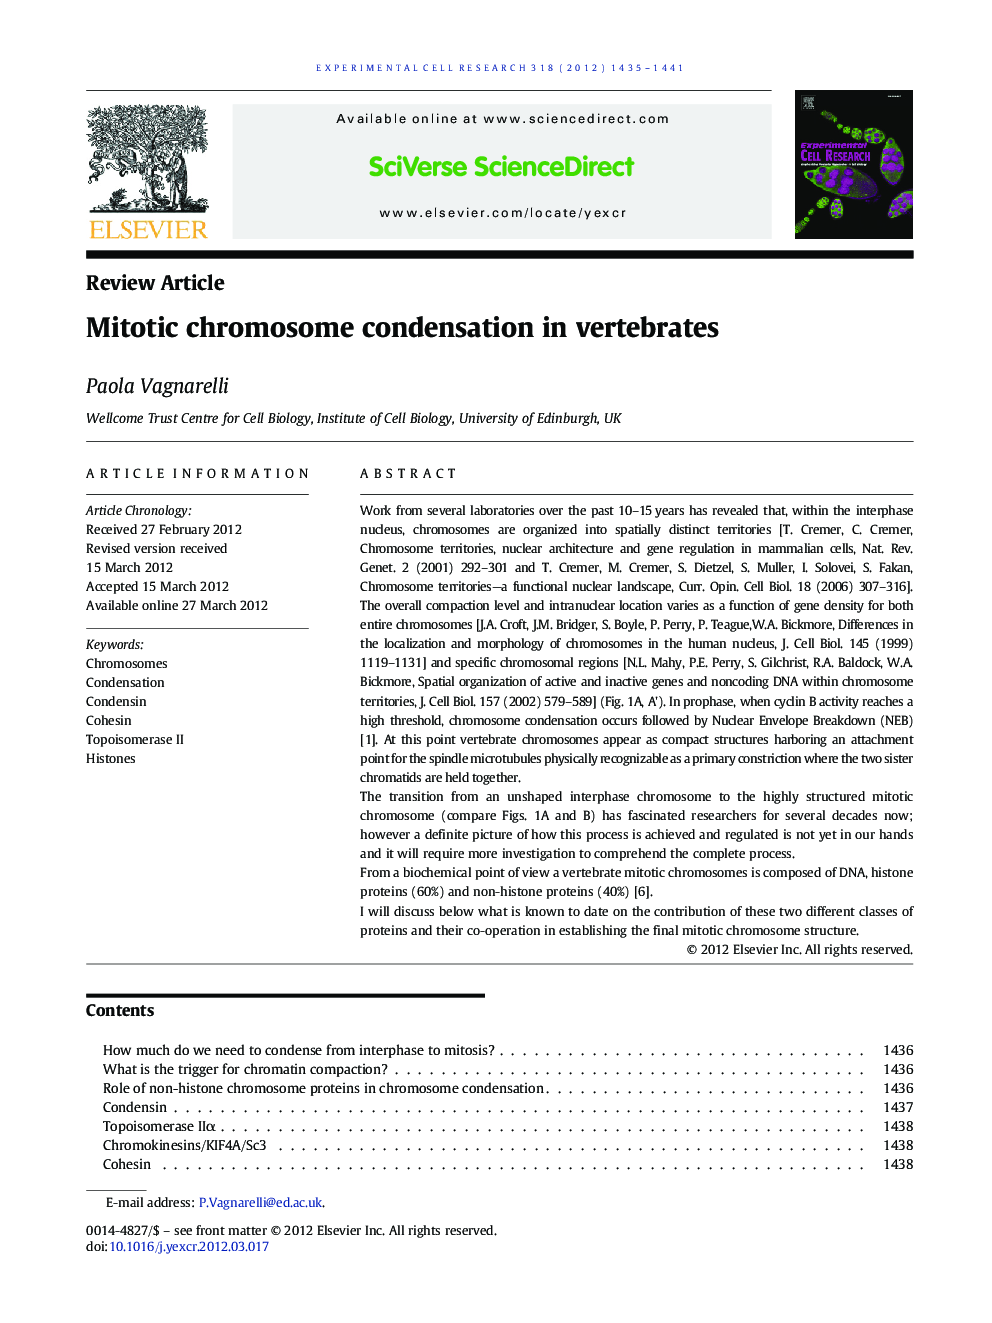 Mitotic chromosome condensation in vertebrates